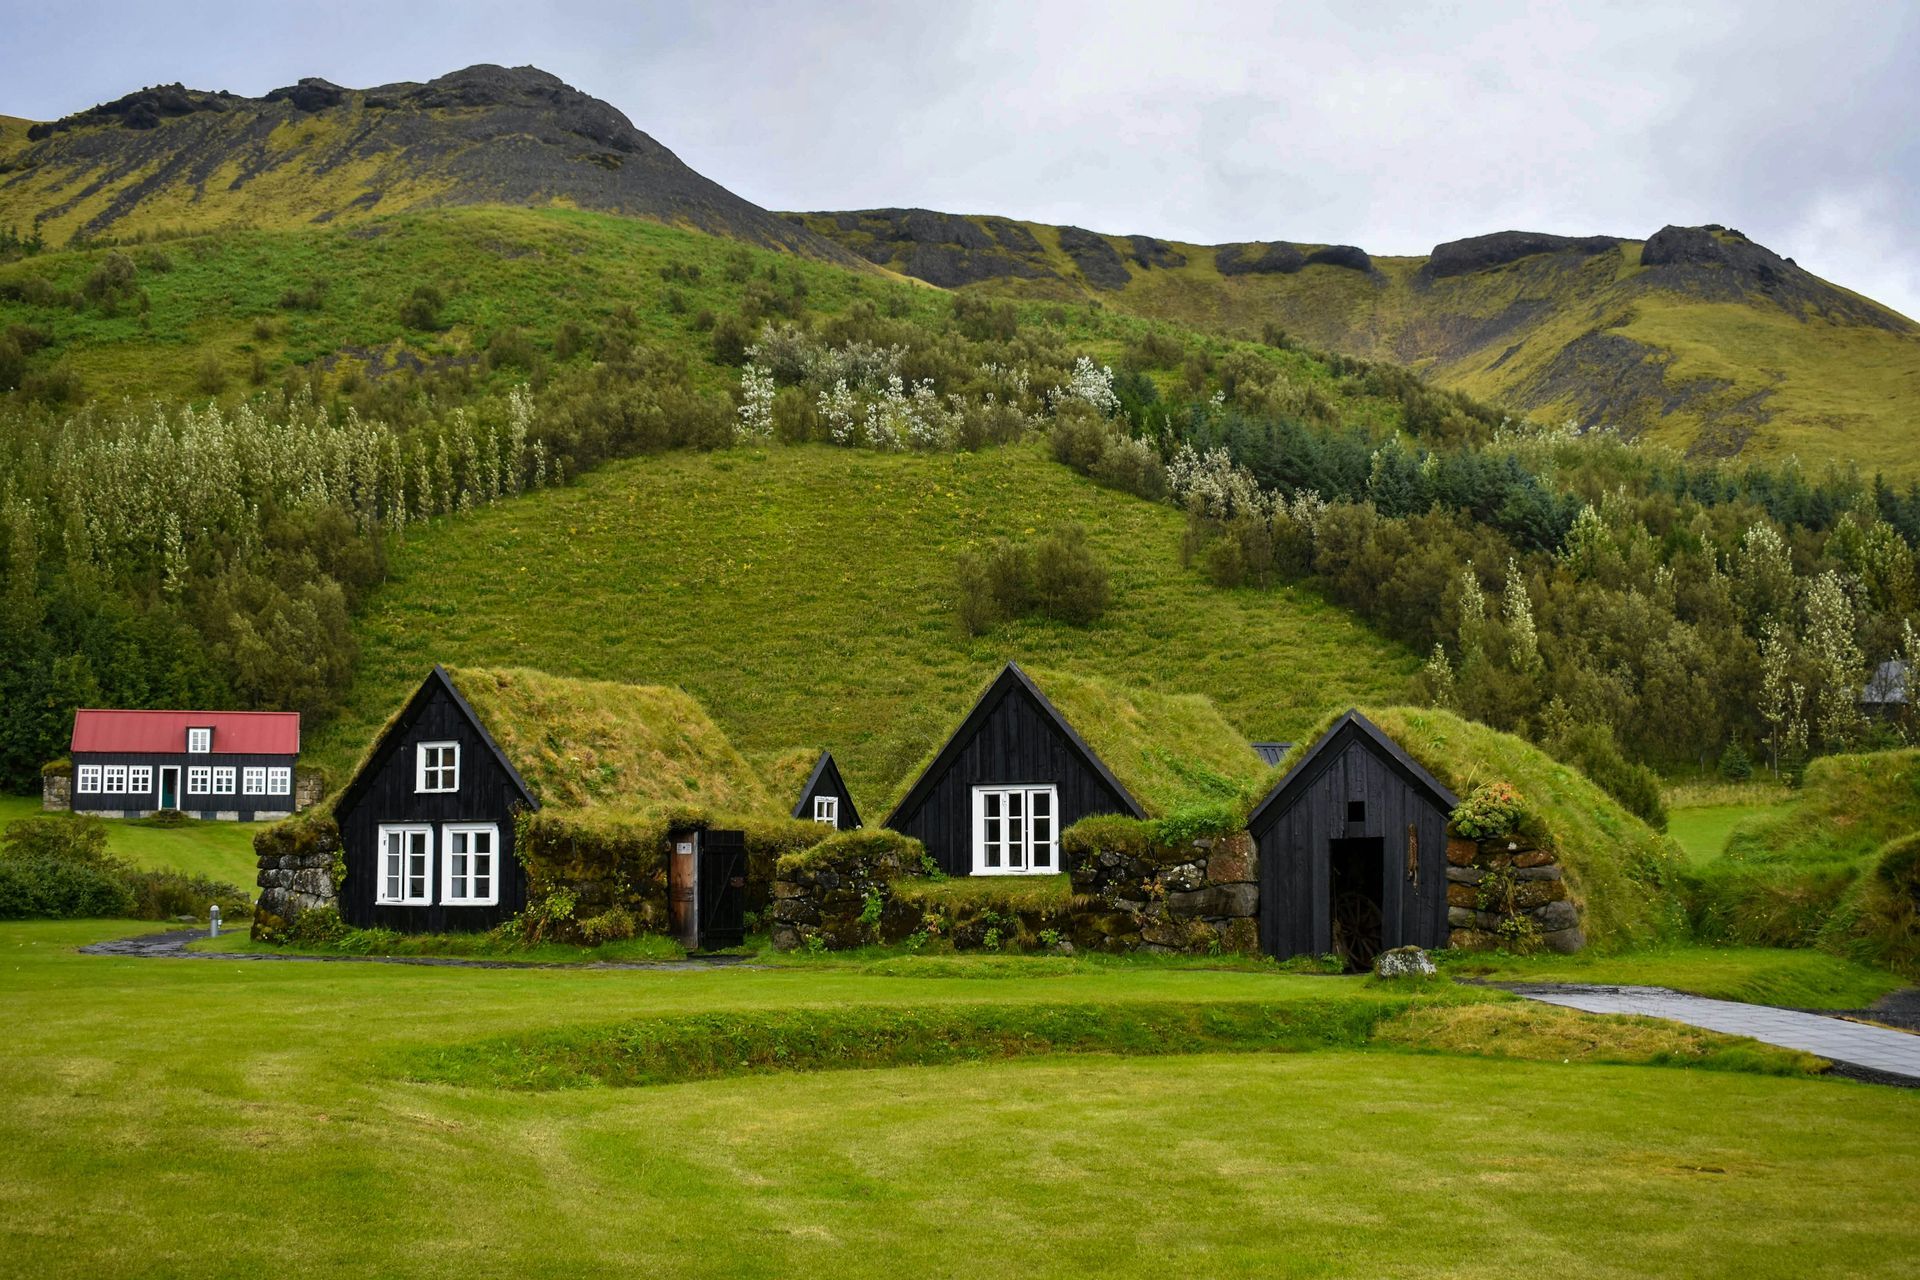 Skogar village in Iceland